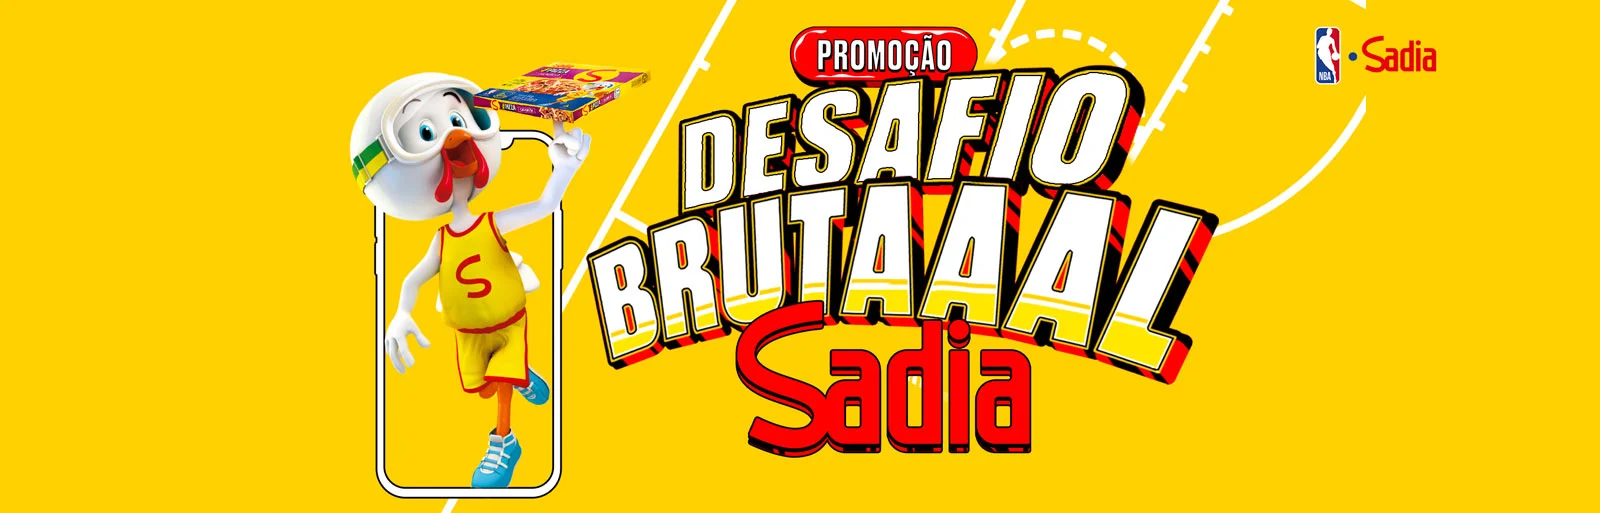 Promoção Sadia 2023 Desafio Brutal